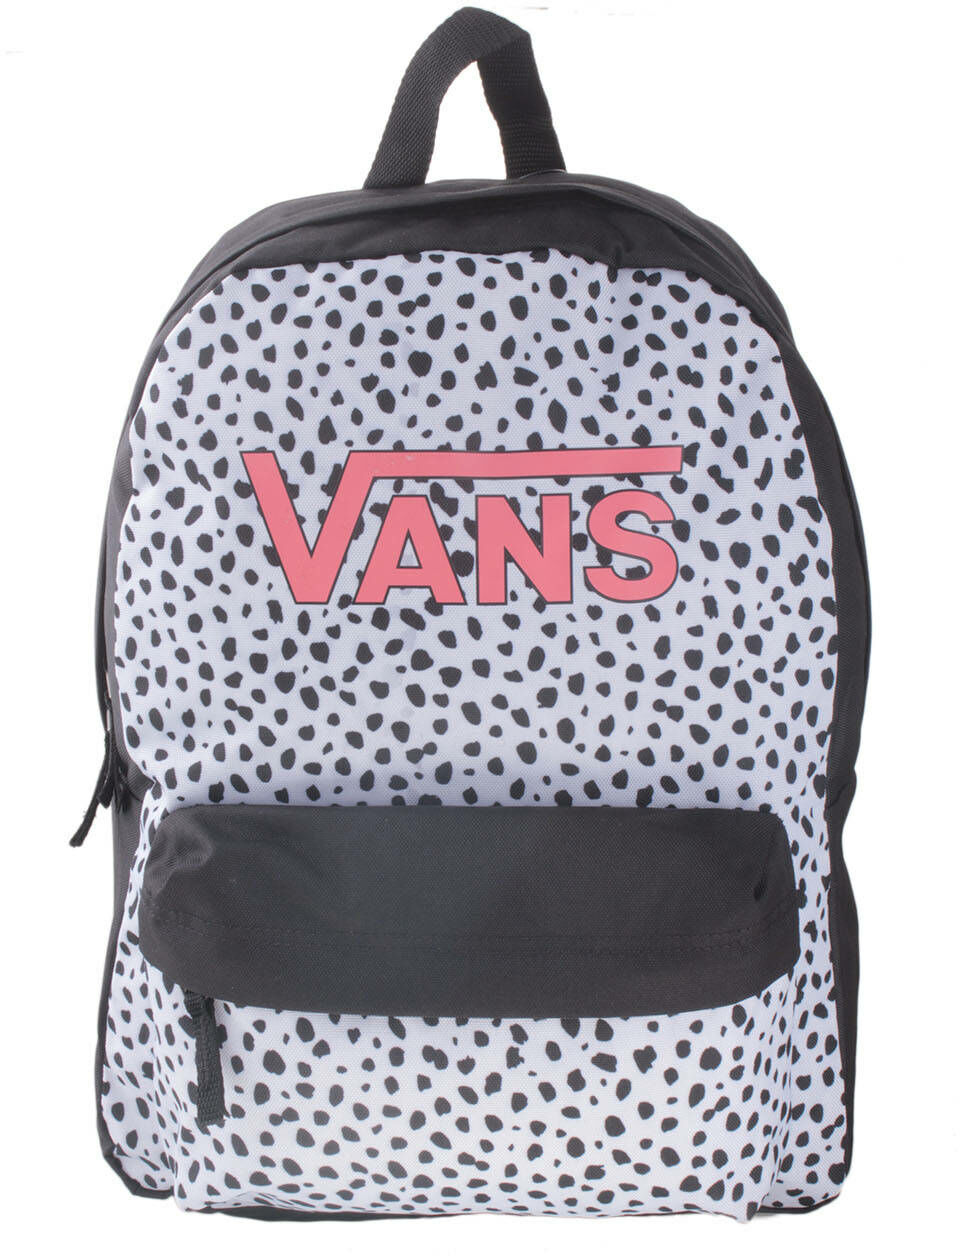 Plecak dziecięcy Vans Girls Realm do szkoły - dalmatian black/white